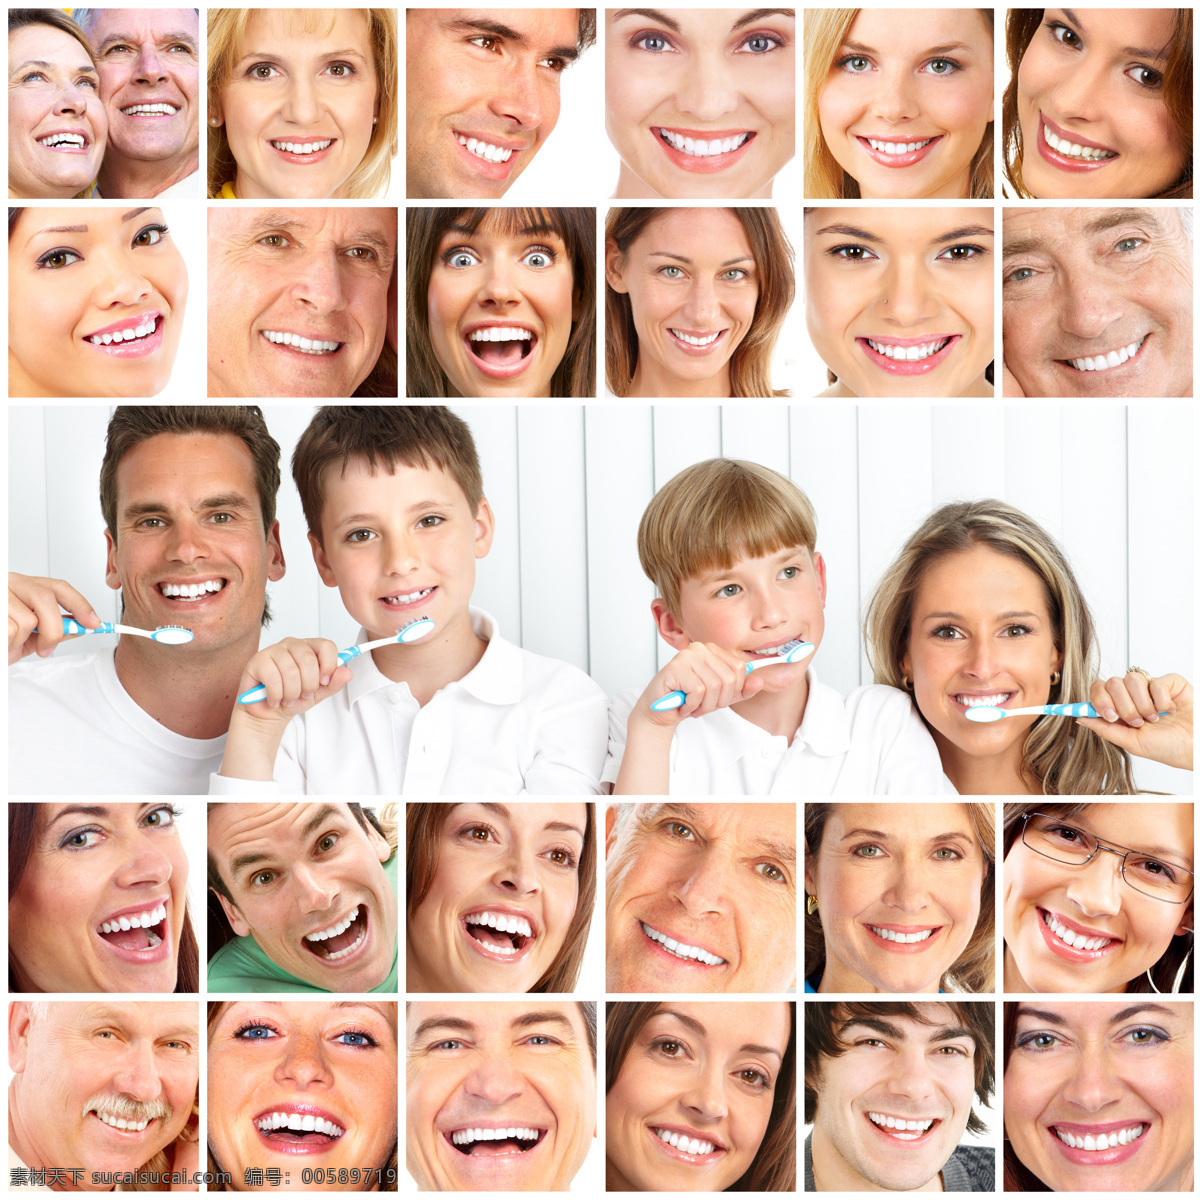 笑脸 刷牙 家庭 牙齿 牙刷 父母 孩子 口腔护理 人体器官图 人物图片